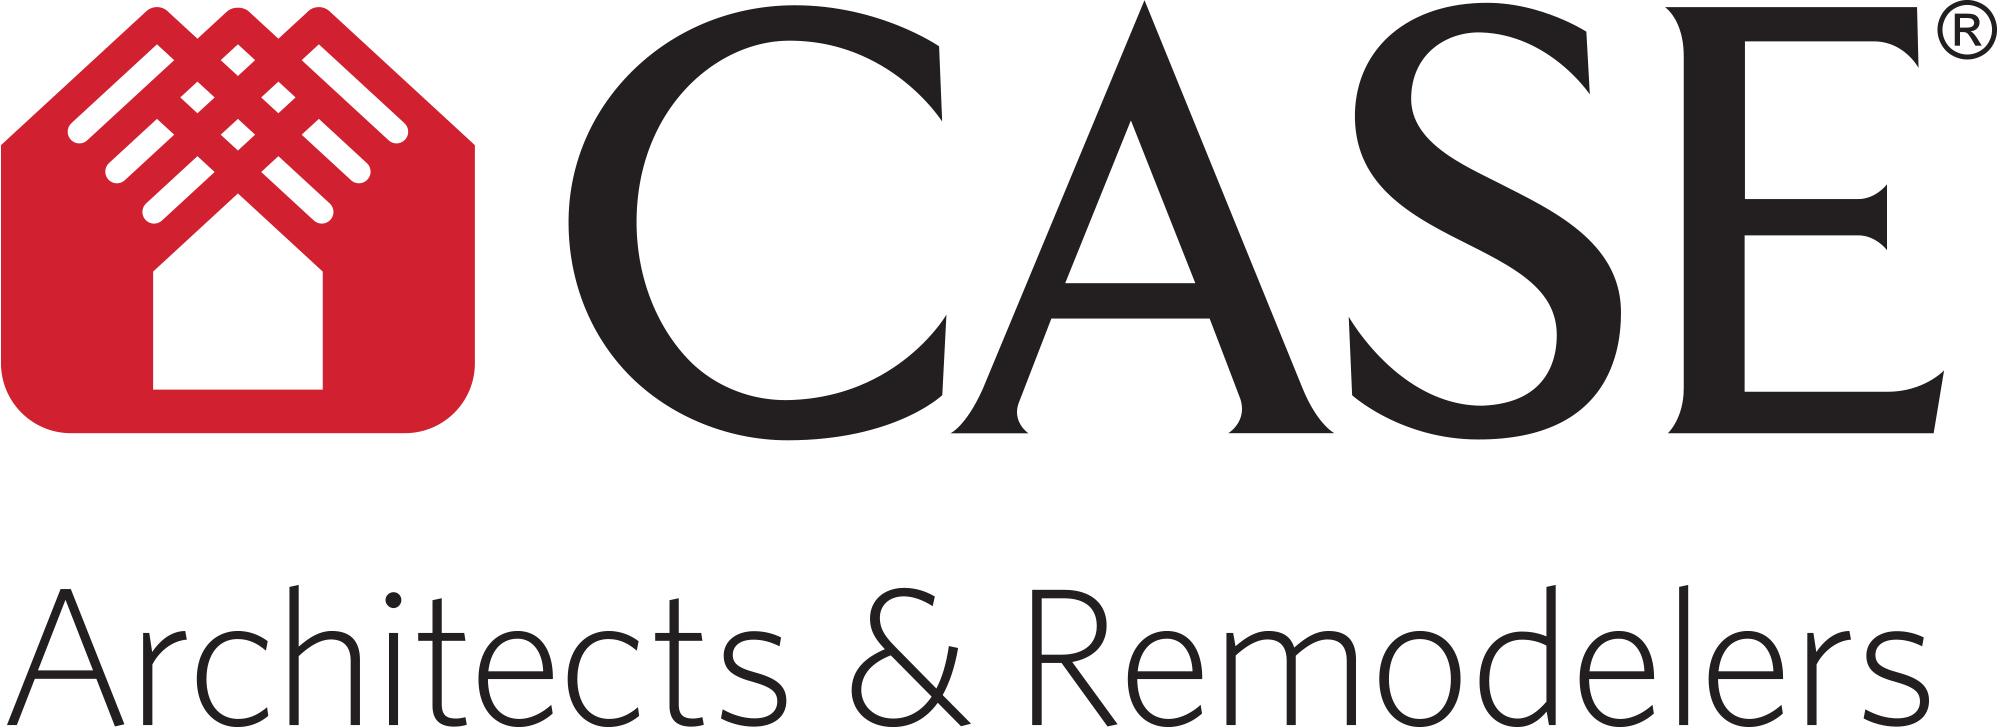 Case Design/Remodeling Company Logo